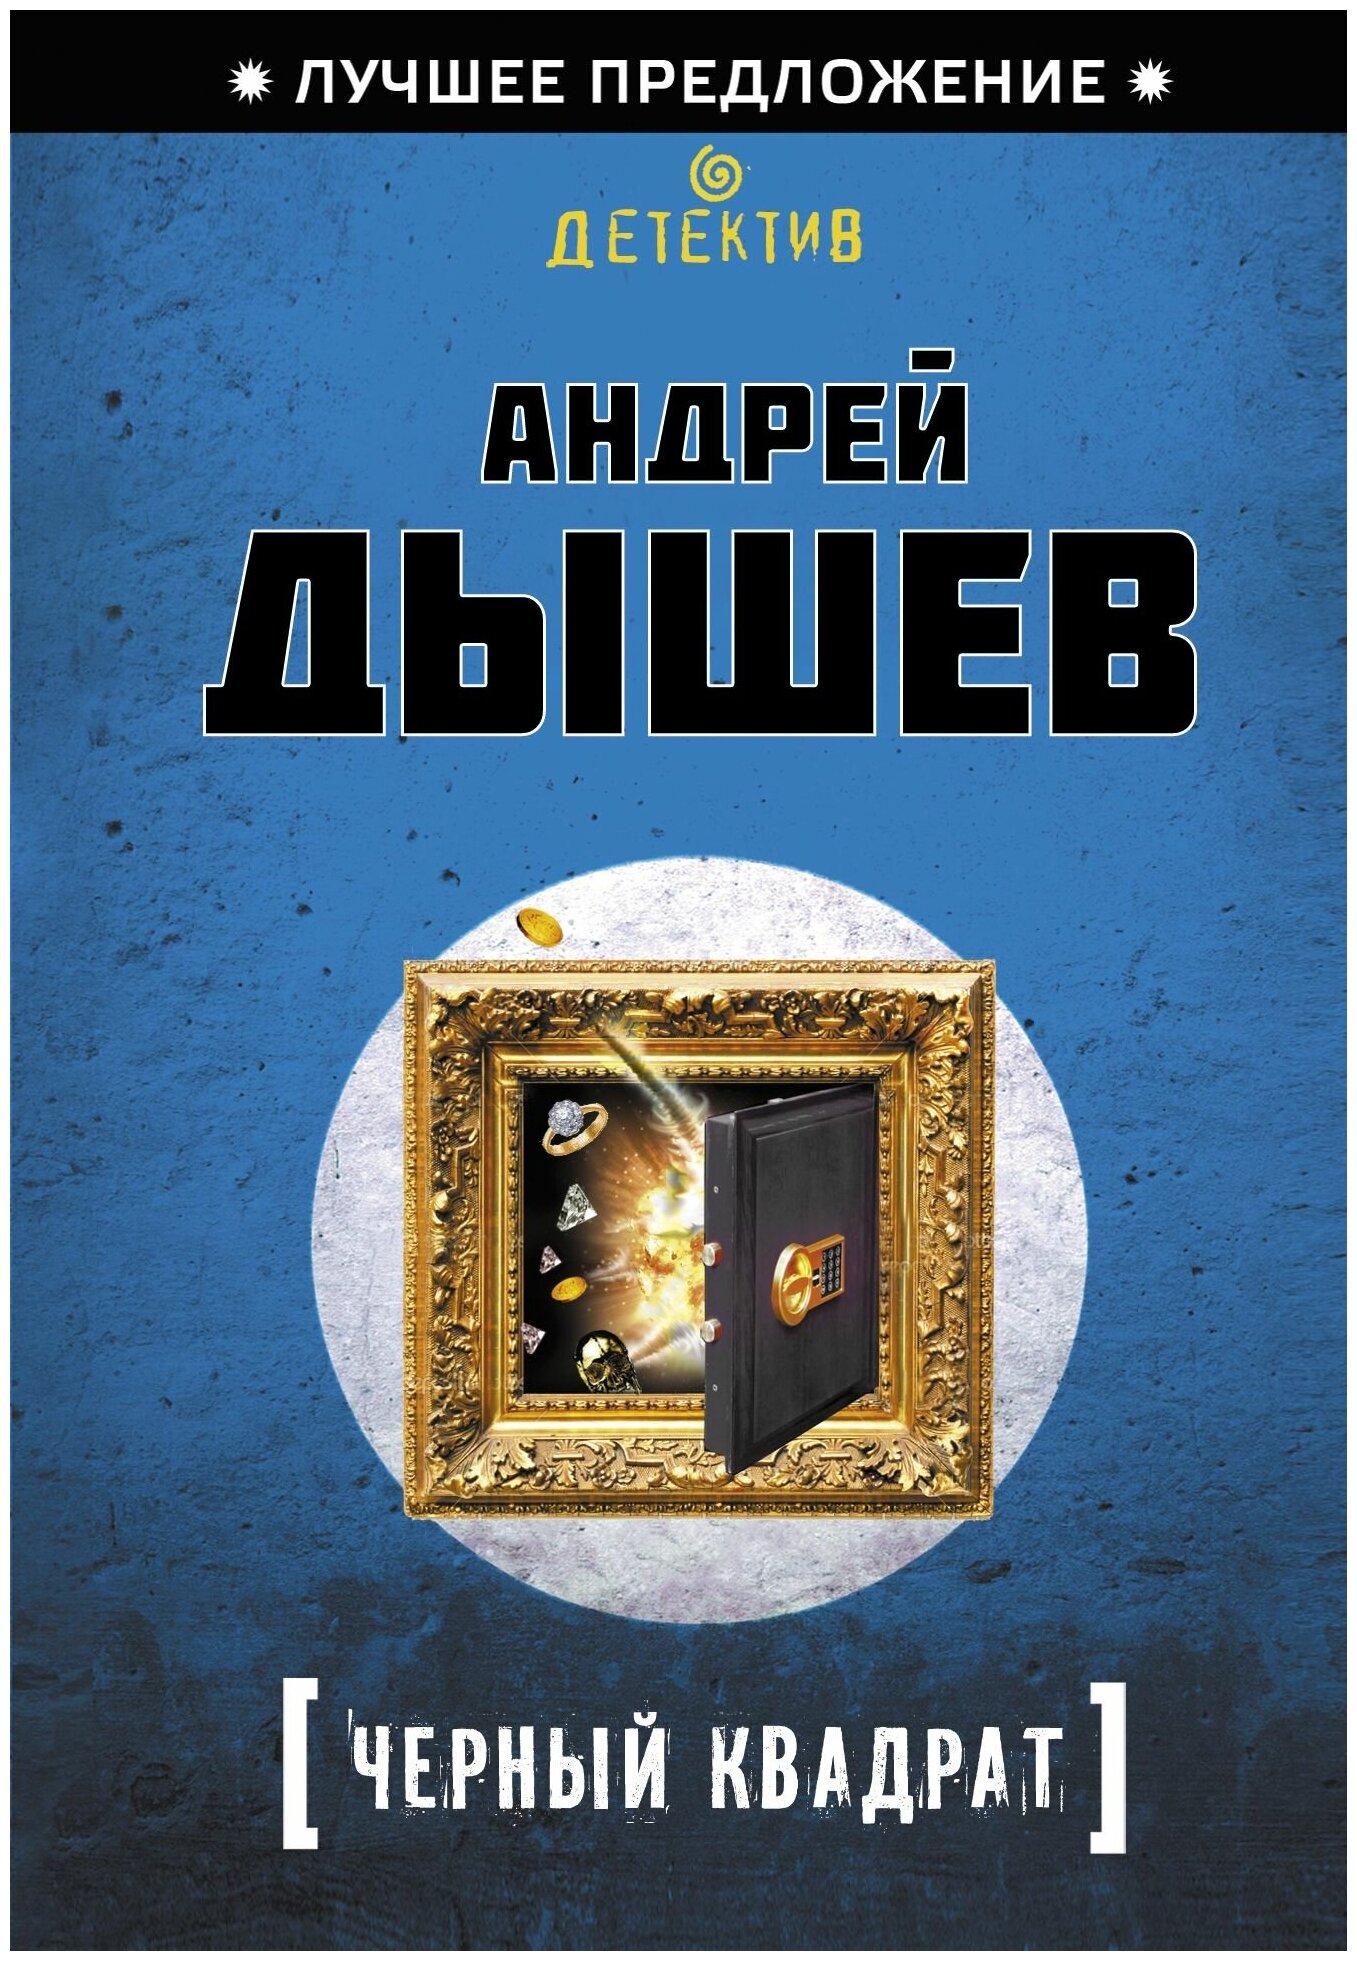 Андрей Дышев "Черный квадрат"